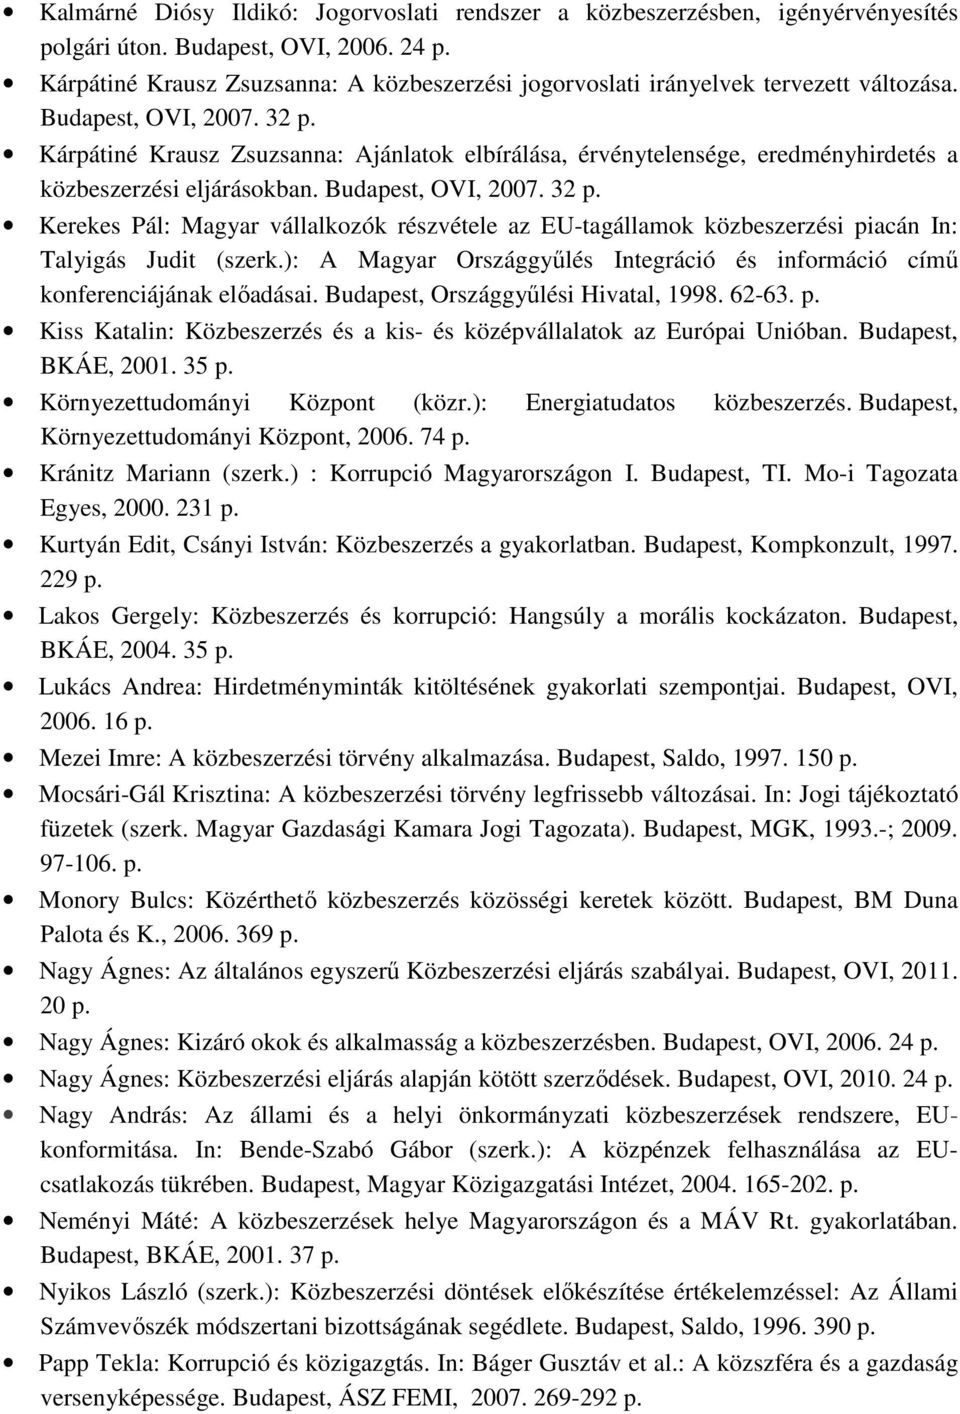 Kárpátiné Krausz Zsuzsanna: Ajánlatok elbírálása, érvénytelensége, eredményhirdetés a közbeszerzési eljárásokban. Budapest, OVI, 2007. 32 p.